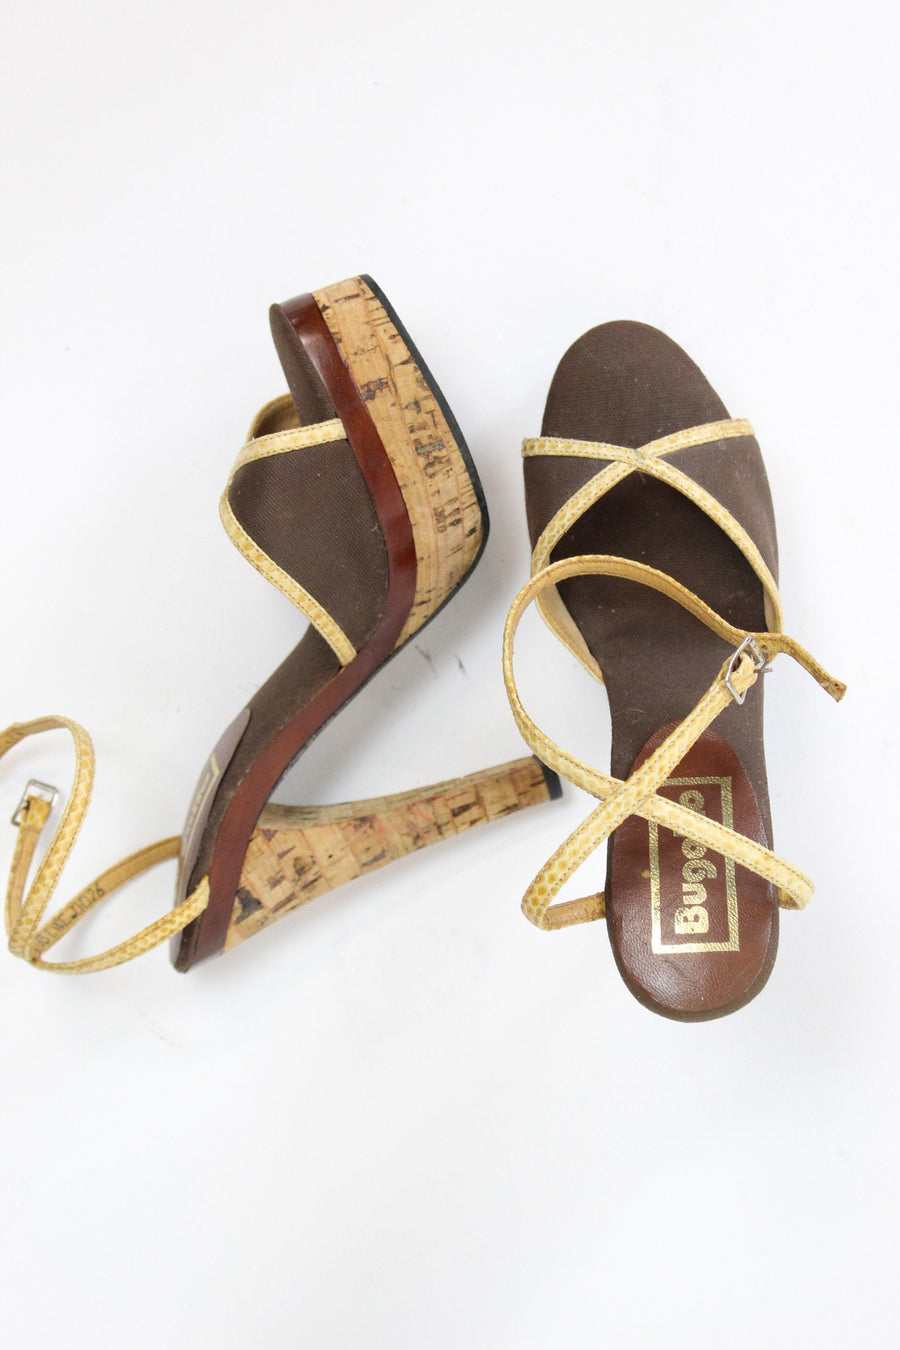 1970s platform shoes | cork heels ankle strap | size 5